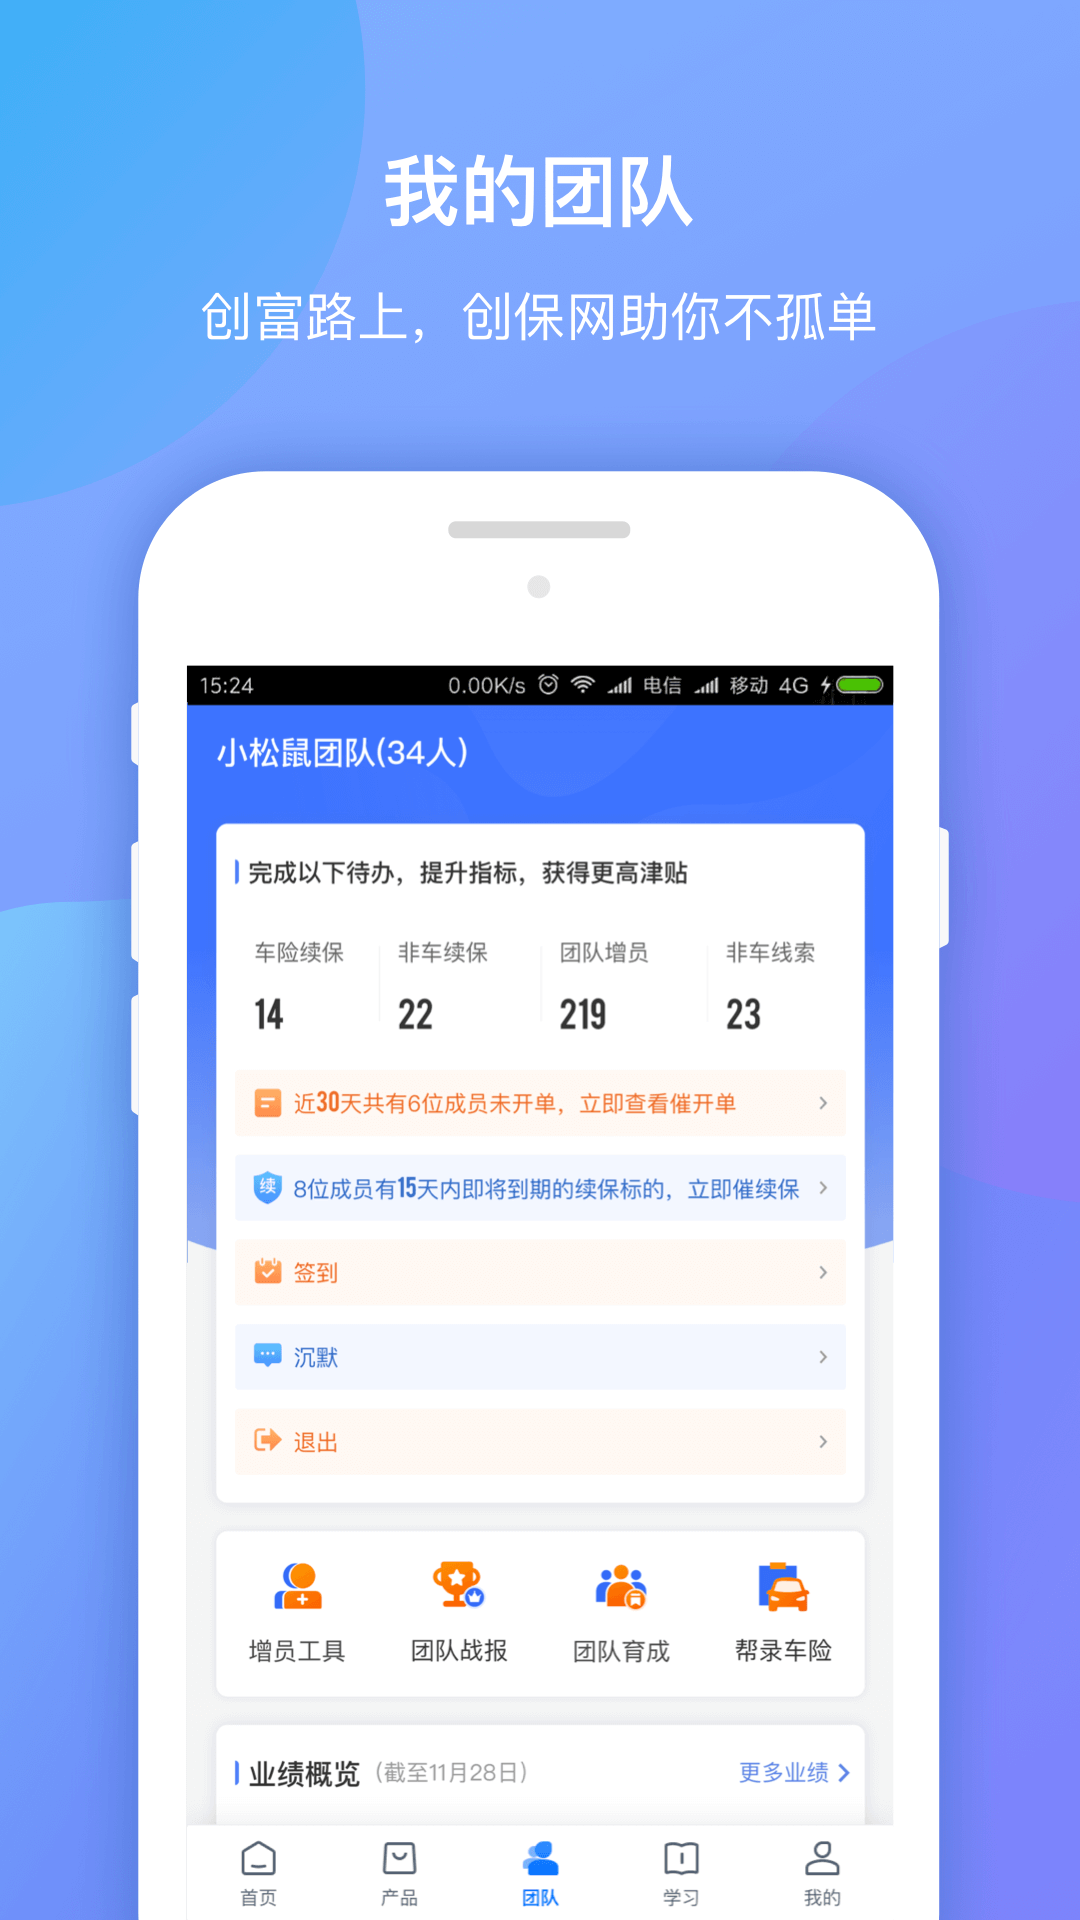 中国房价行情网app-中国房价行情app下载-中国房价行情平台app